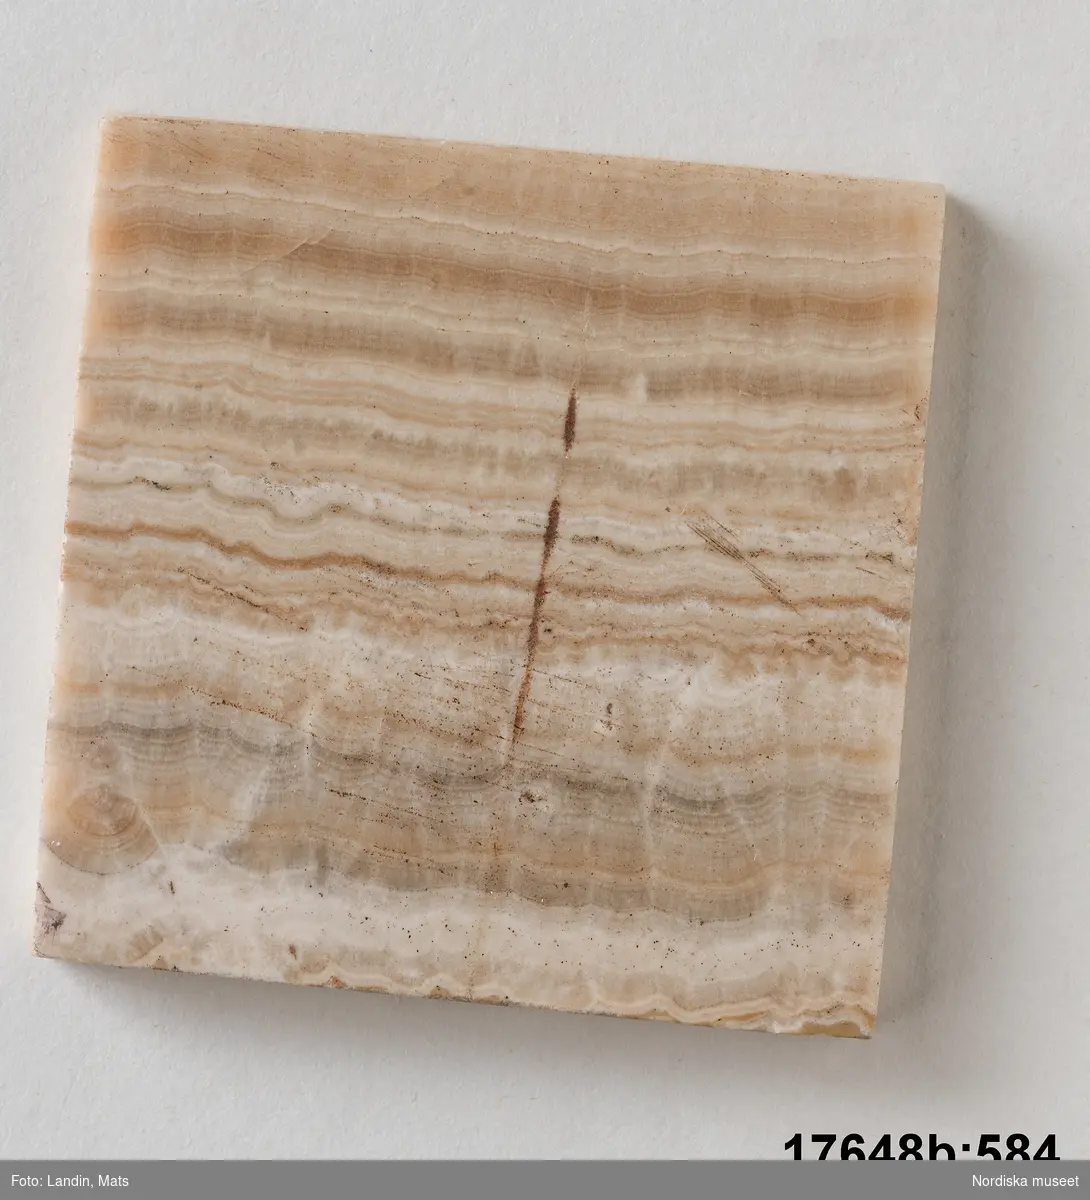 Kvadratisk platta av sten (trol. alabaster). Randigt mönster i olika bruna och vita nyanser. 
/Leif Wallin 2014-01-07